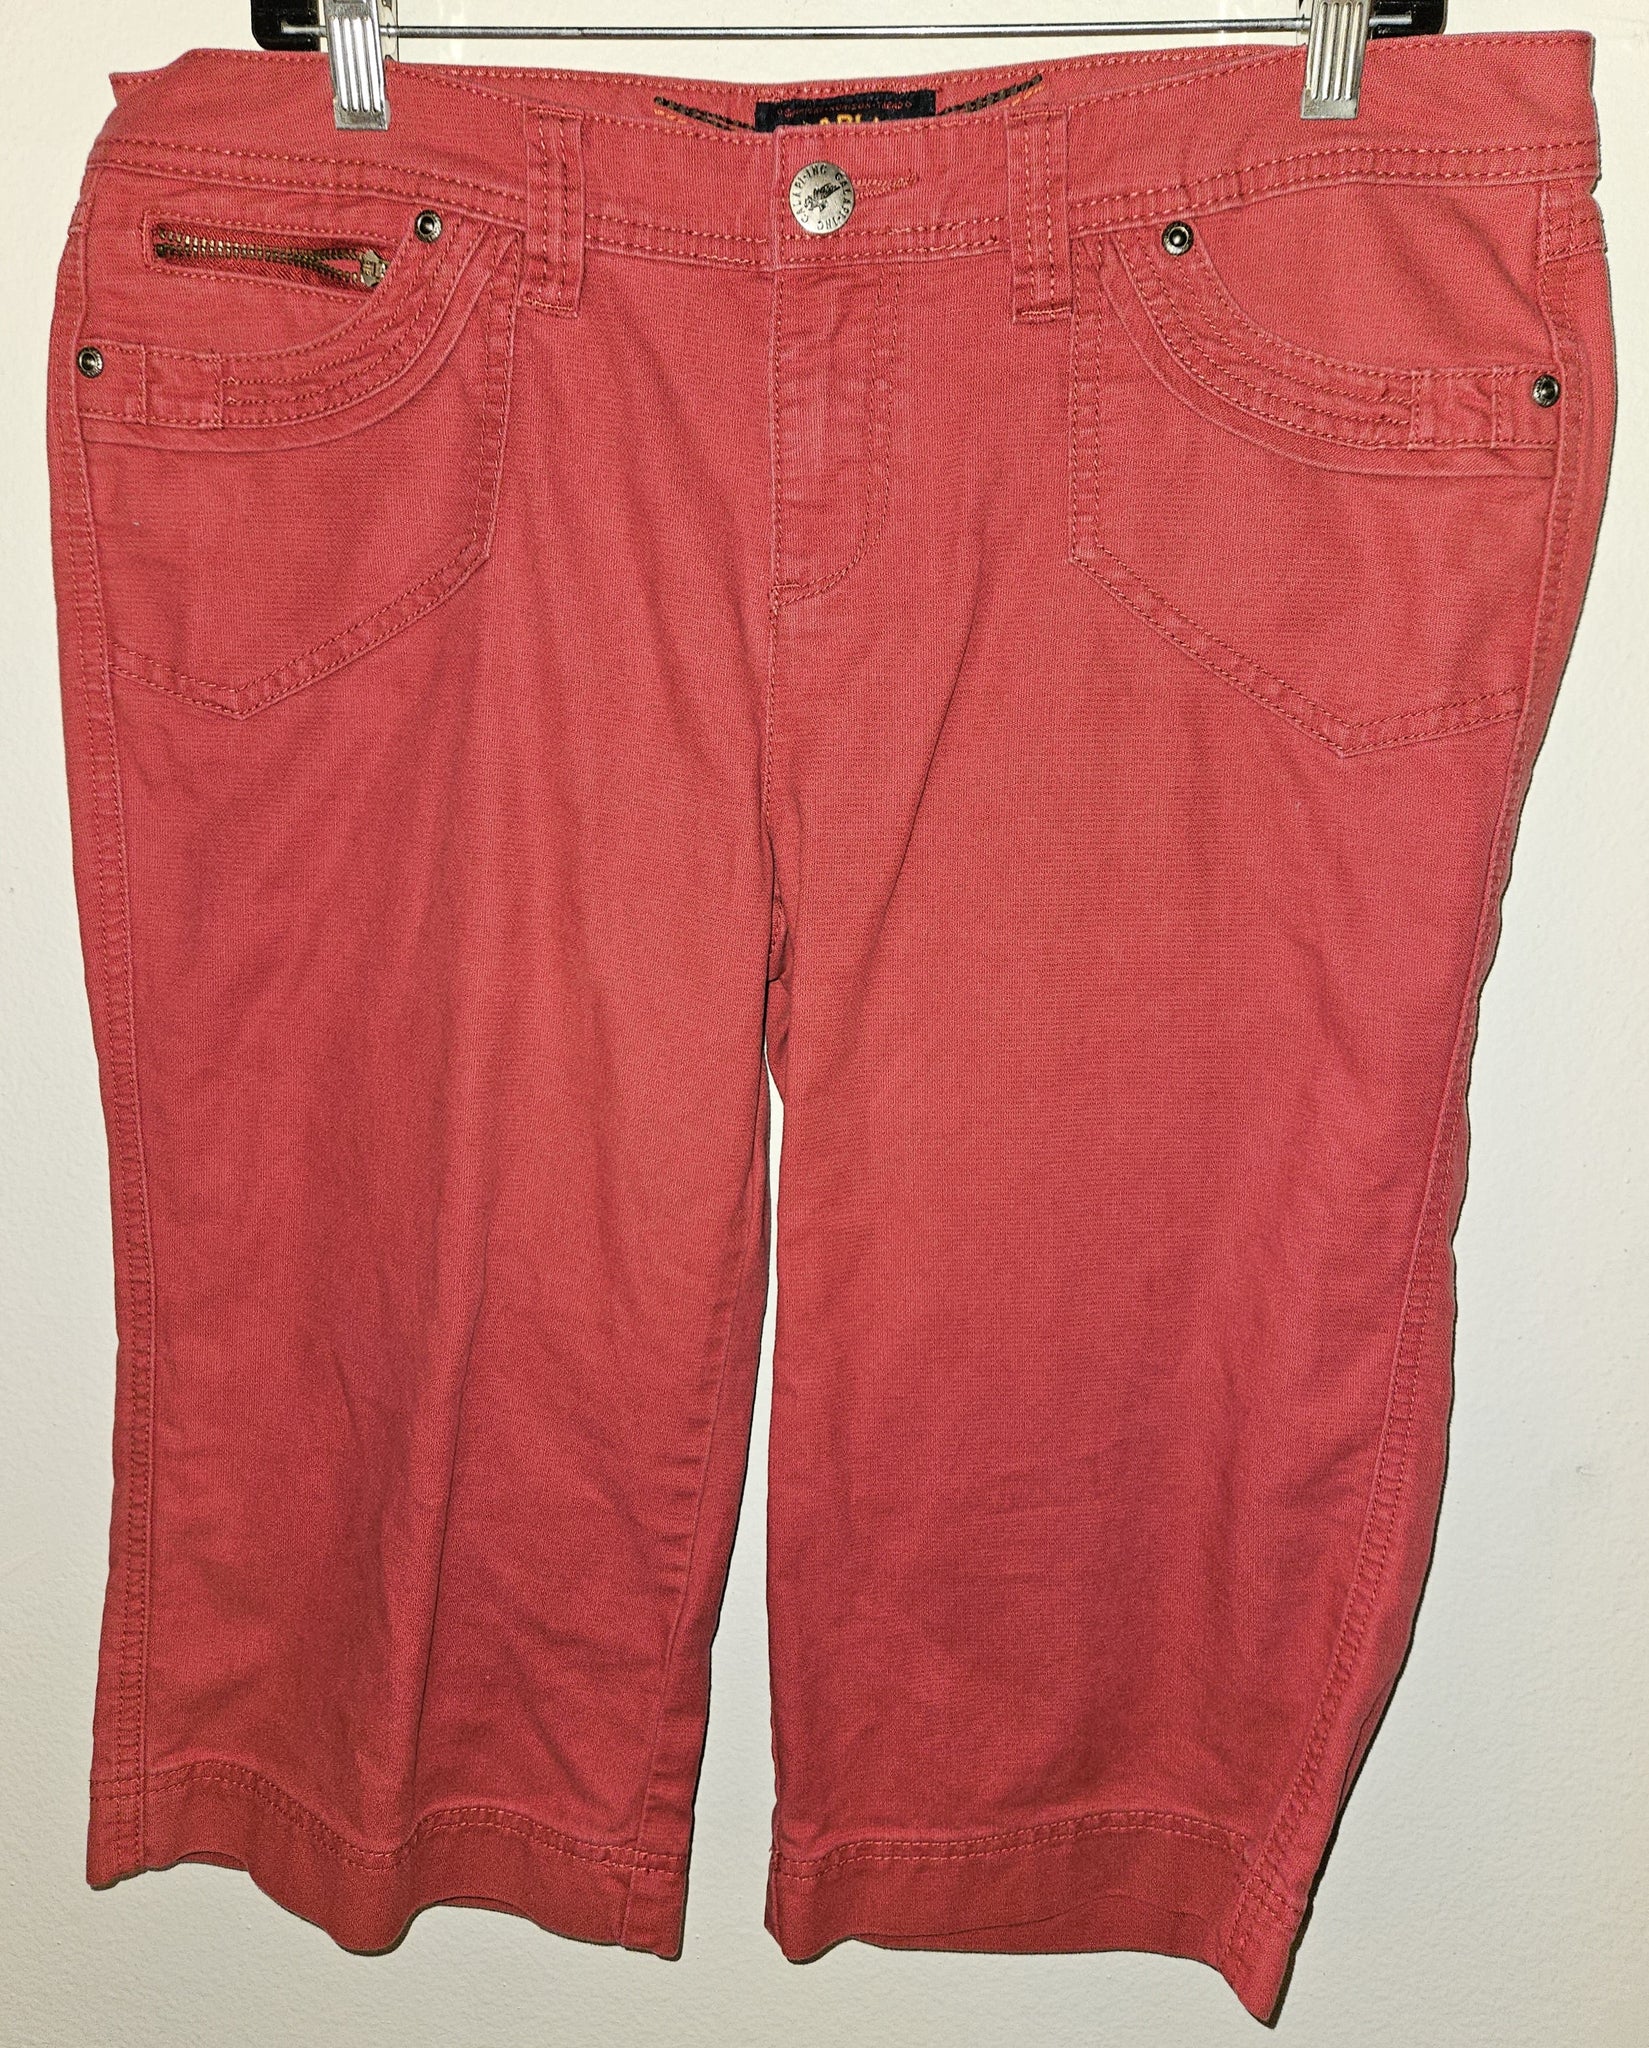 Juniors 13 CALAPING Red Capri Pants